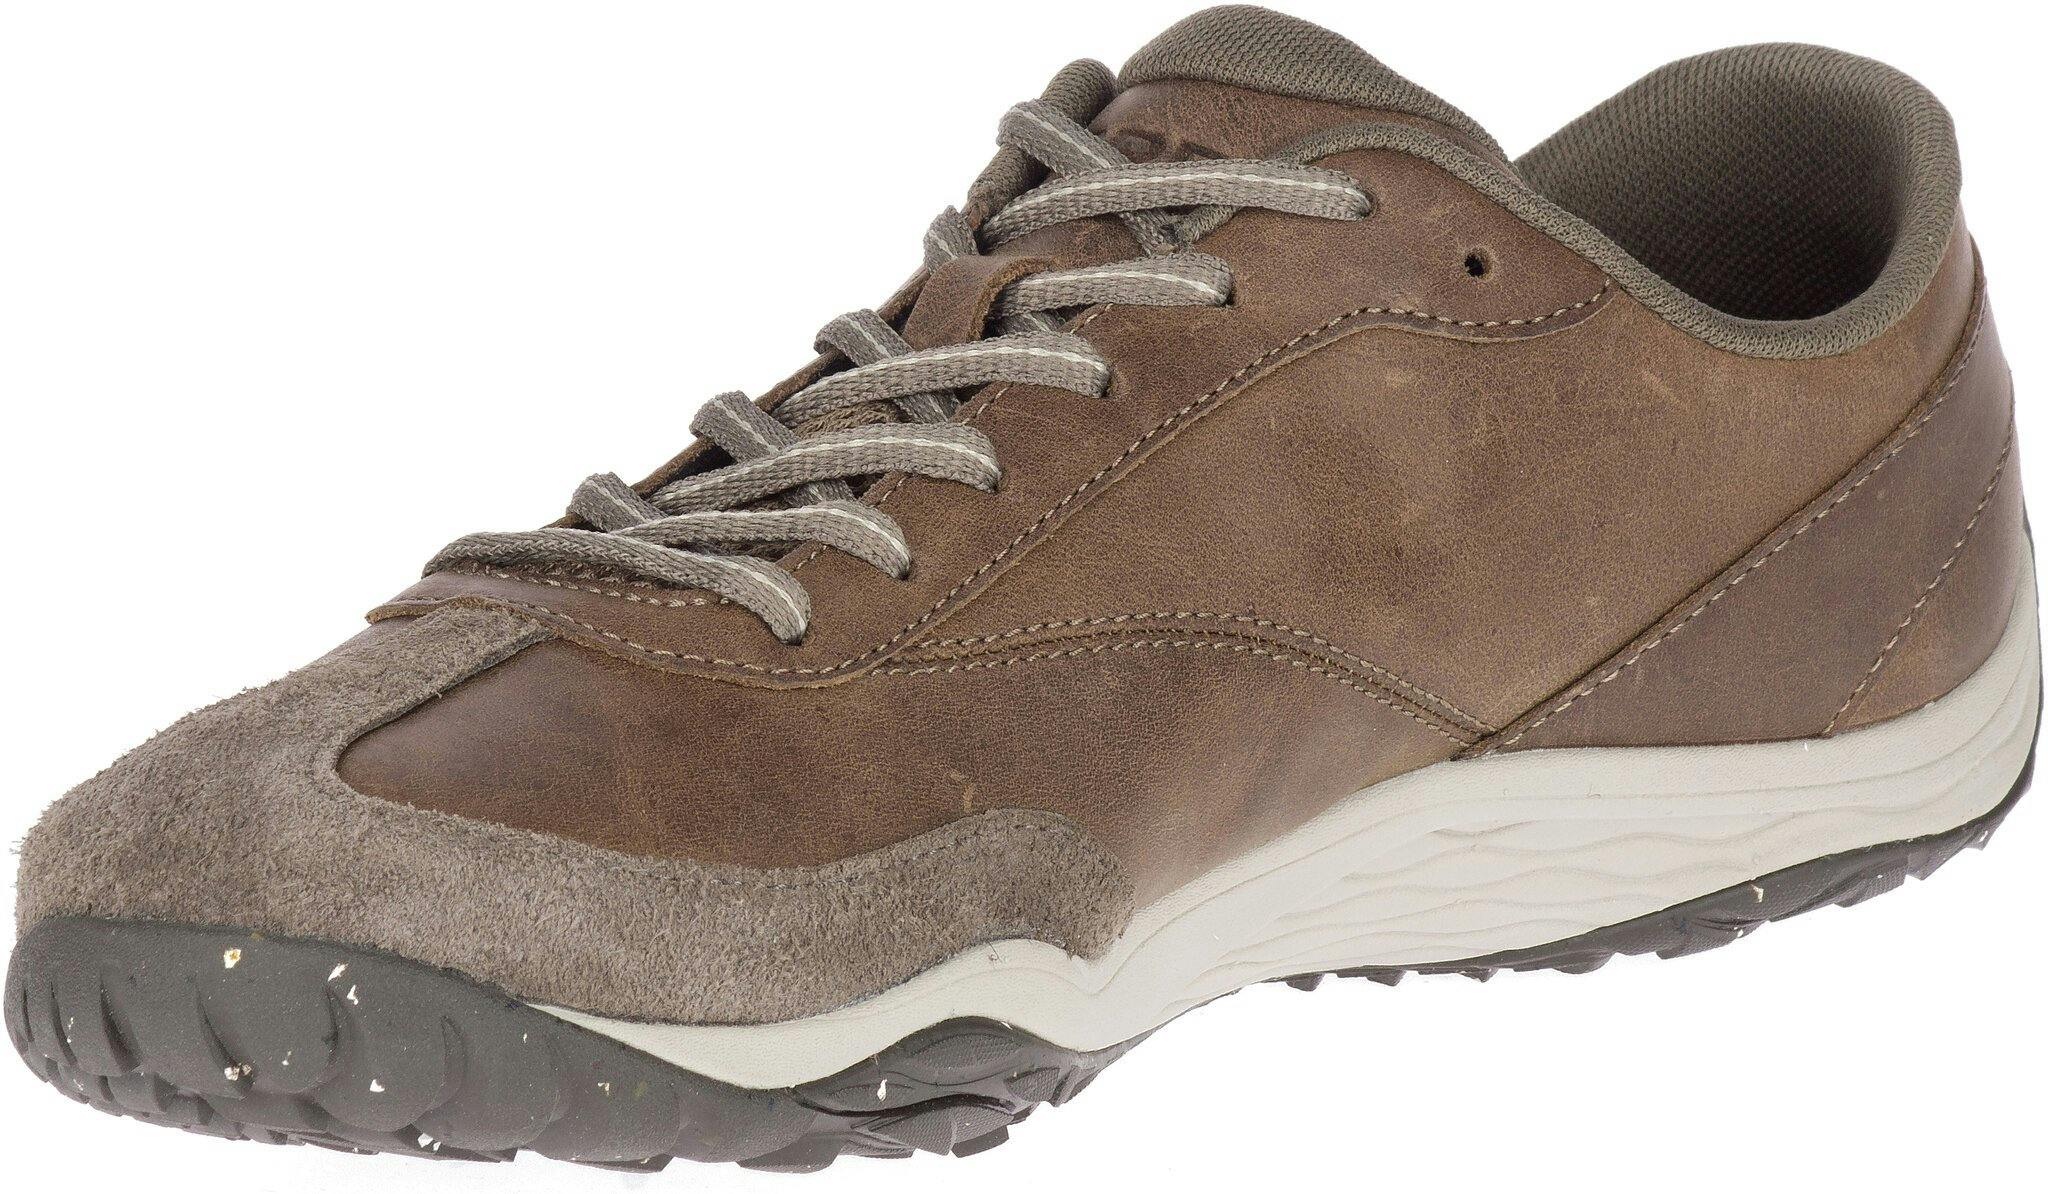 Numéro de l'image de la galerie de produits 2 pour le produit Chaussures Trail Glove 5 Leather - Homme